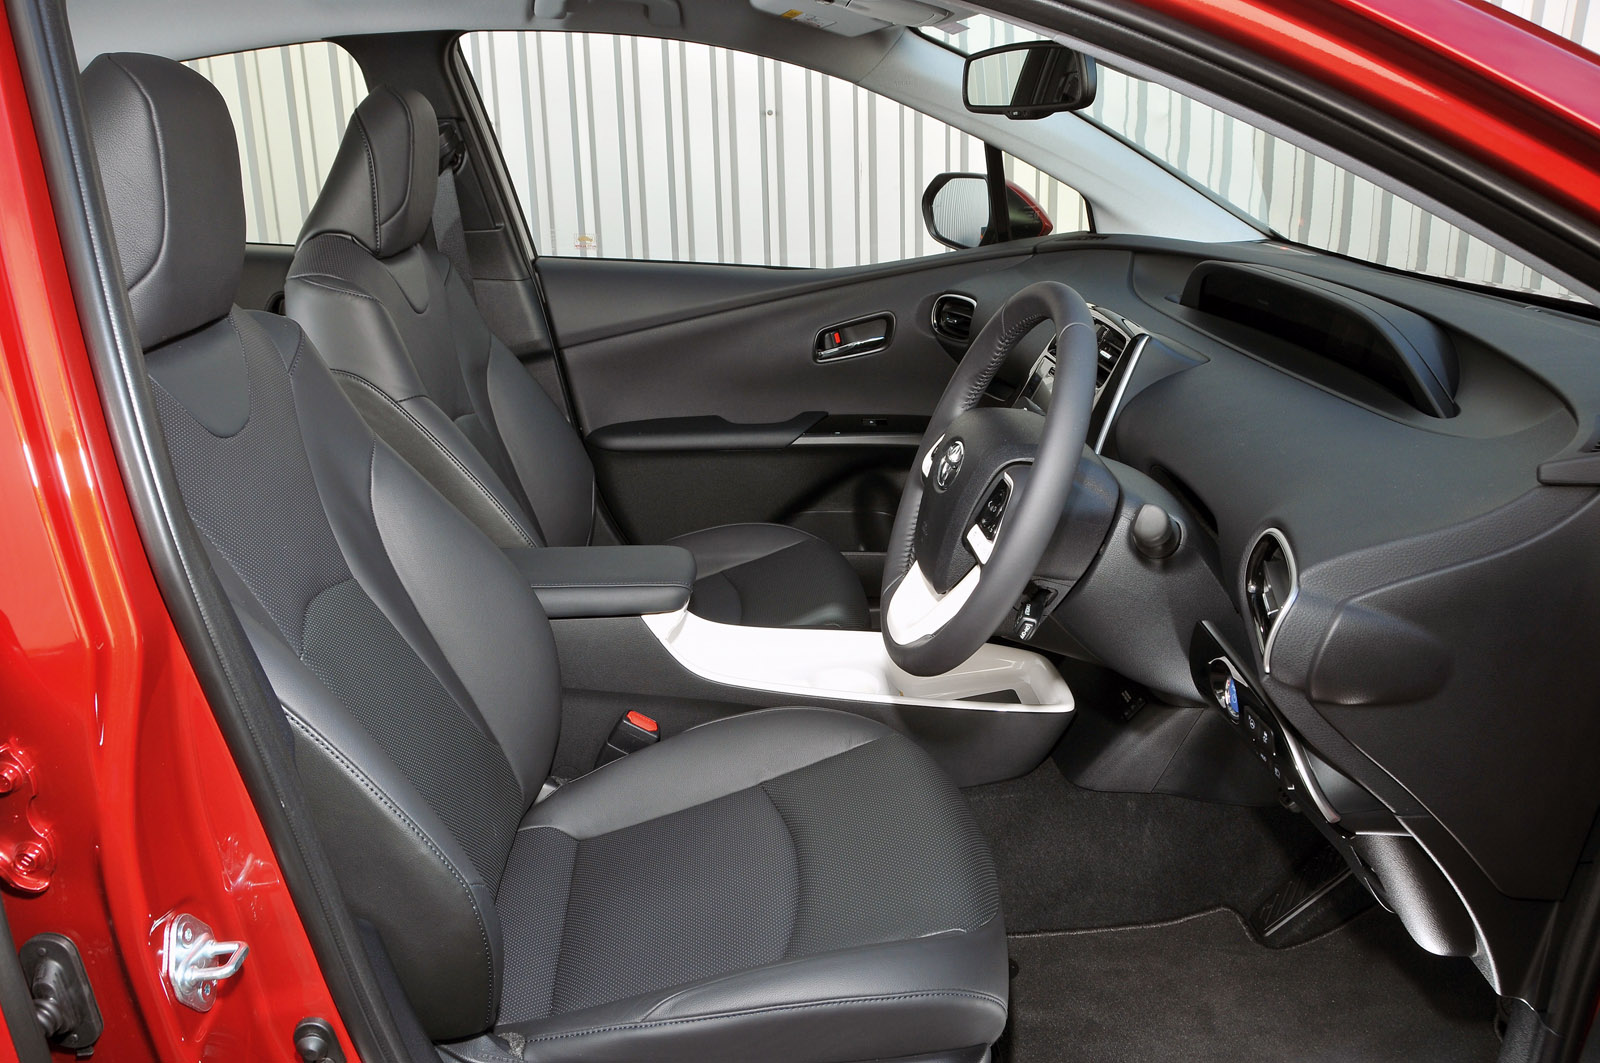 Toyota Prius interior